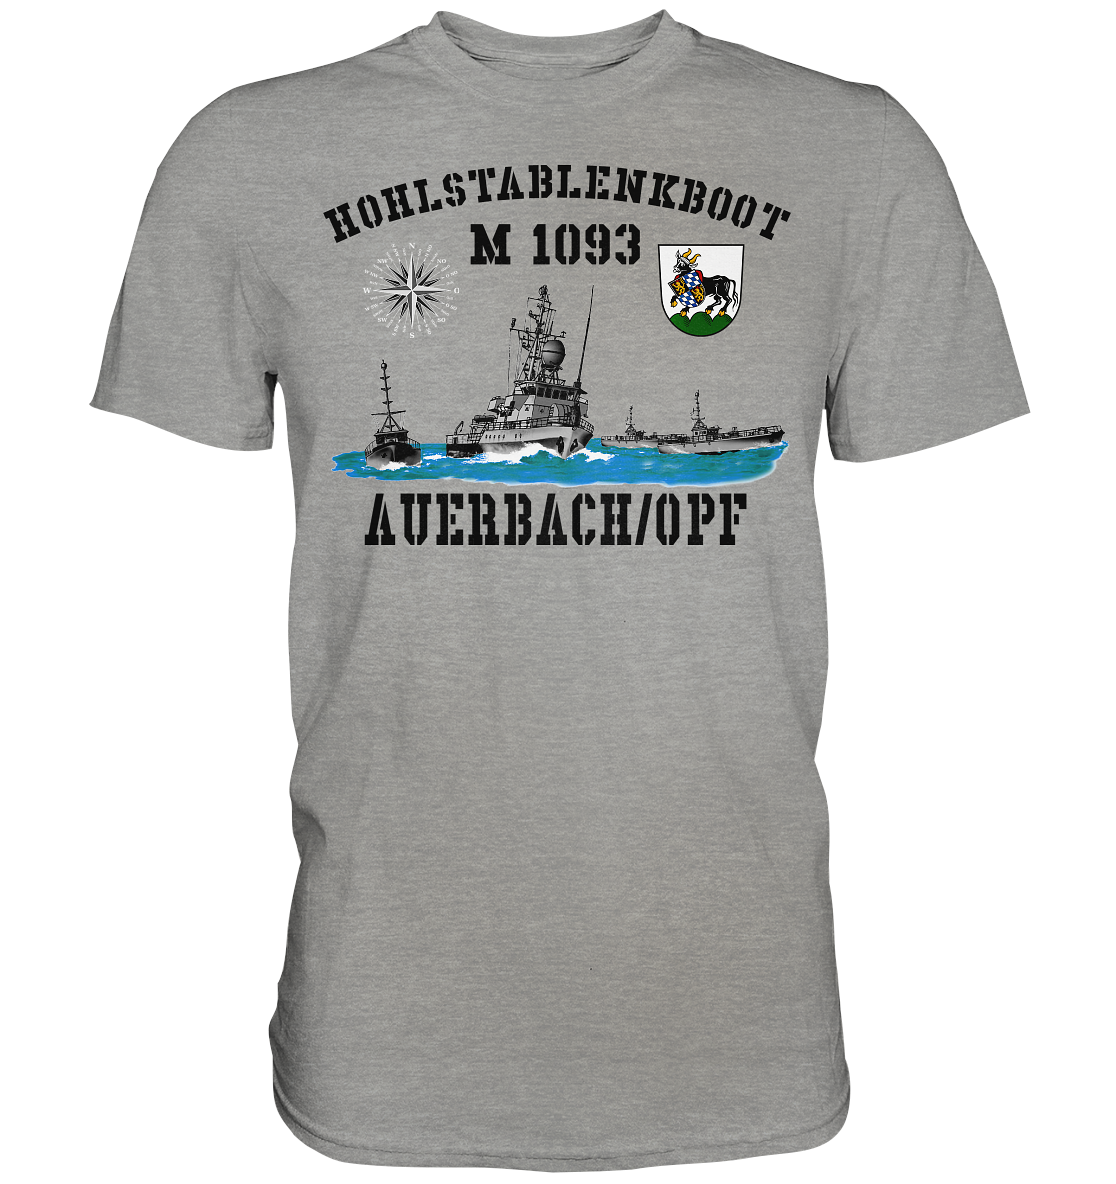 HL-Boot M1093 AUERBACH/OPF -hell - Premium Shirt